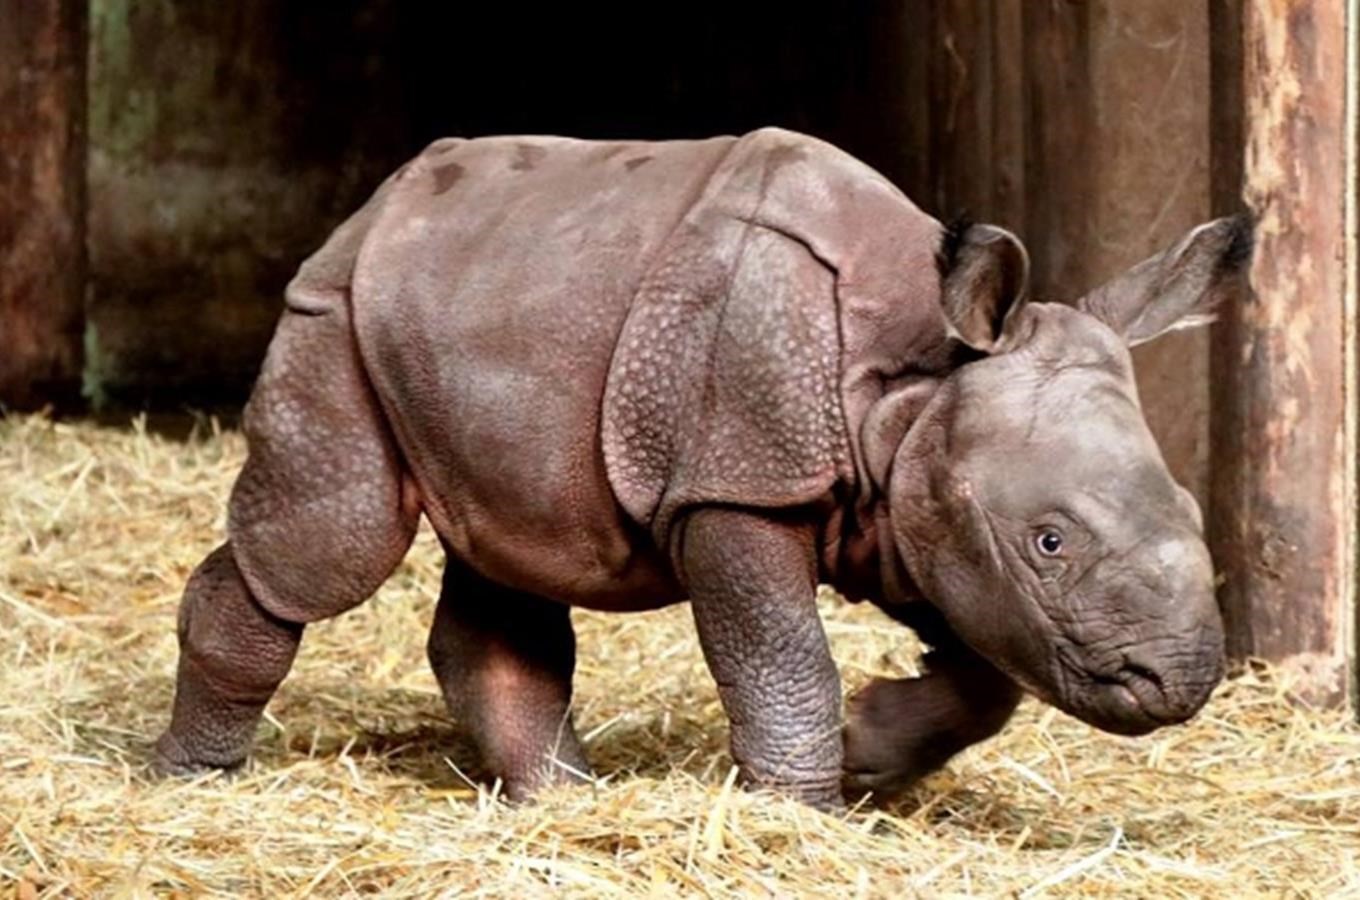 Nosorožčí slečna v plzeňské zoo přijímá první návštěvy